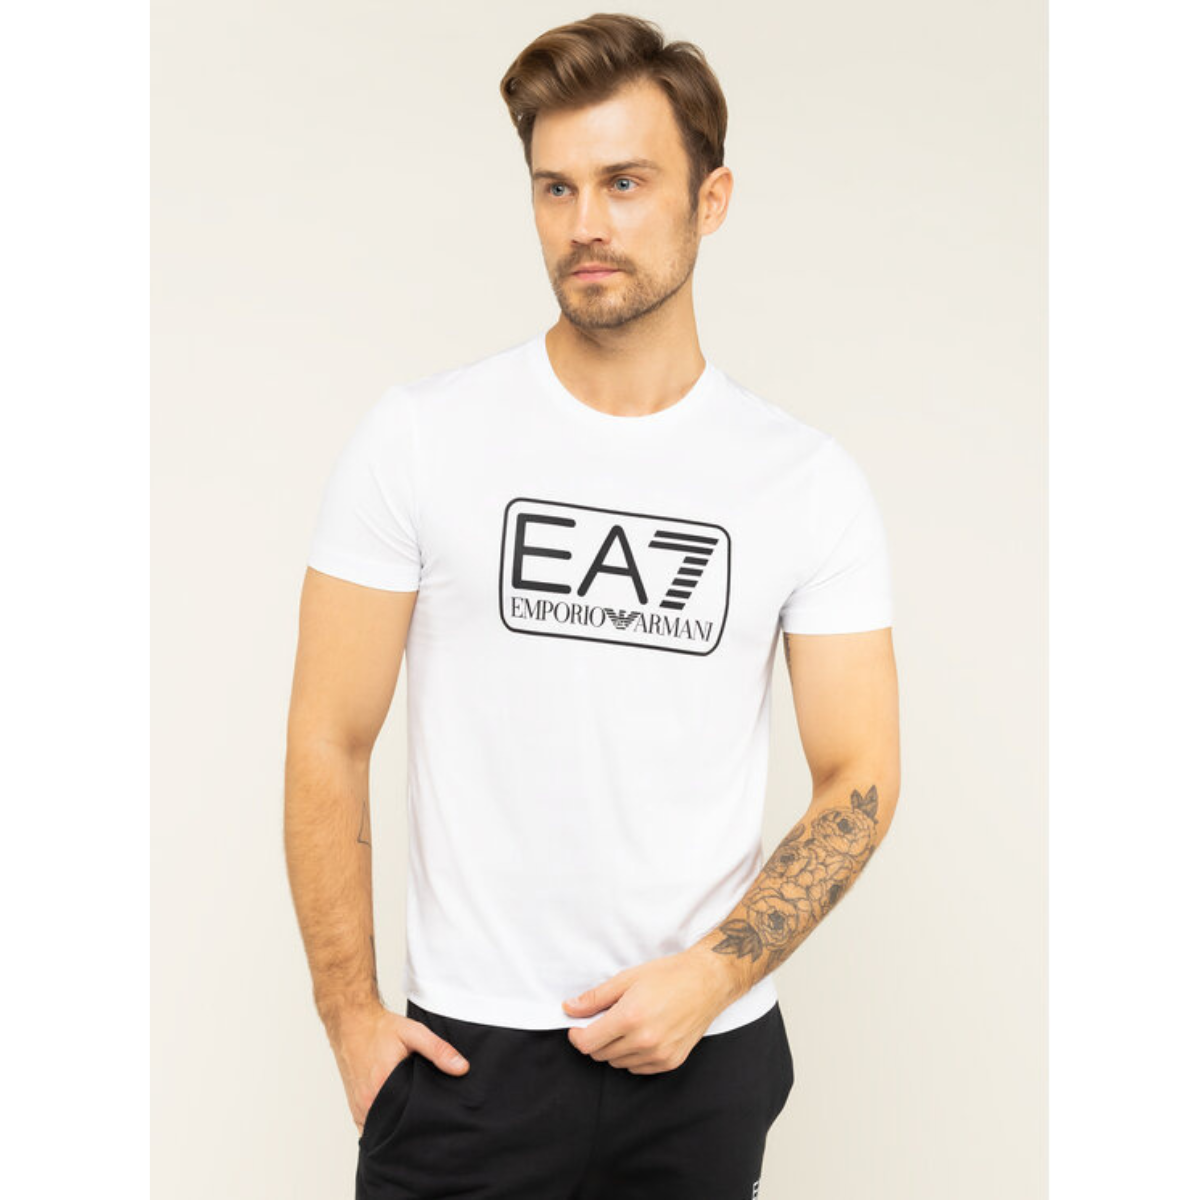 EA7 Emporio Armani - T-Shirt - White